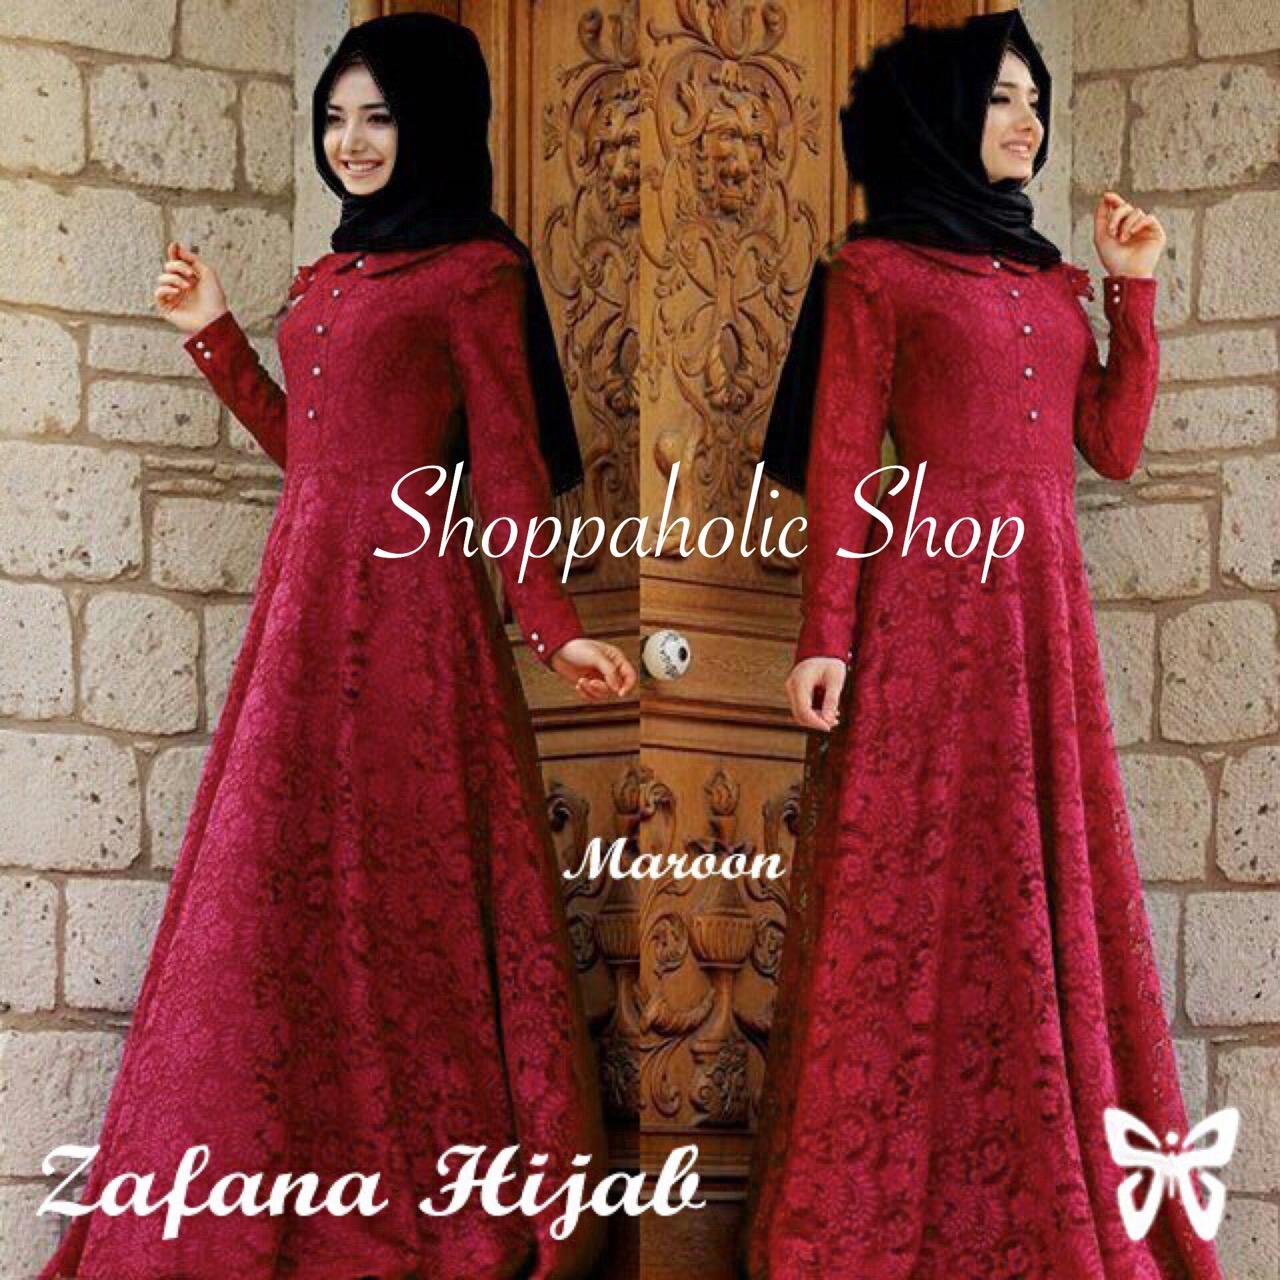 Shoppaholic Shop Maxi Hijab Brukat Zafana - Maroon / Dress Muslimah / Hijab Muslim / Gamis Syari / Baju Muslim / Fashion Muslim / Dress Muslim / Fashion Maxi / Setelan Muslim / Atasan Muslimah / Pashmina / Pasmina / Bergo